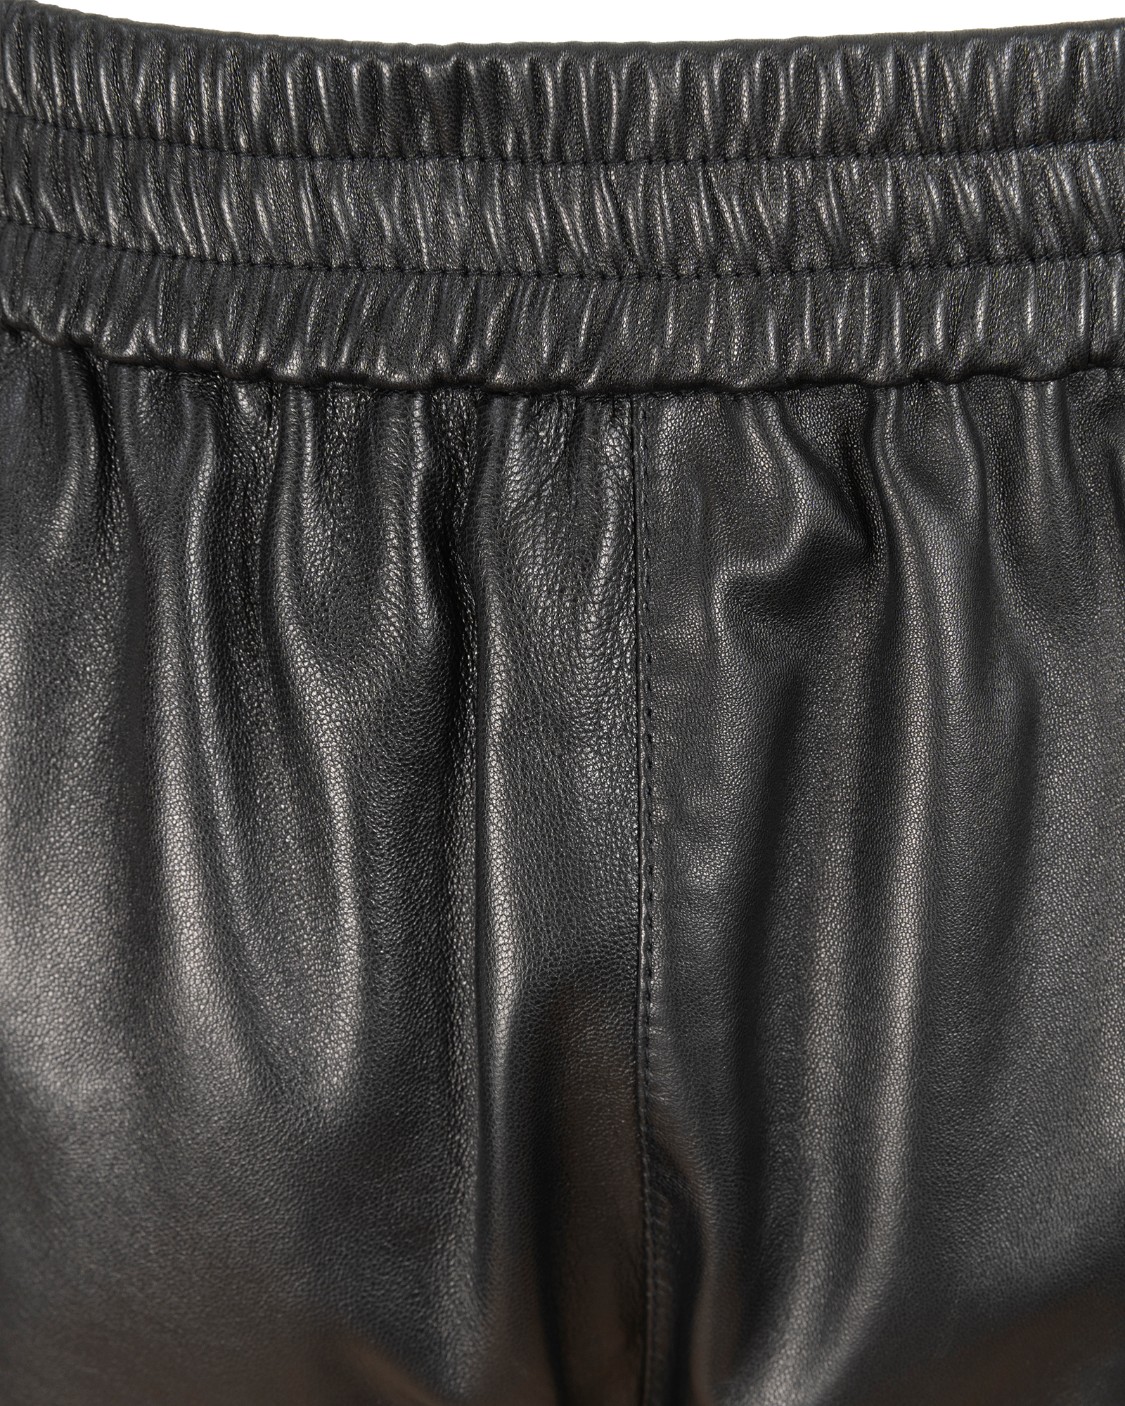 shop DROME Sales Pantalone: Drome pantalone in pelle nero.
Vita alta.
Vita con elastico.
Tasche laterali.
Composizione: 100% vera pelle.
Made in Italy.
Made in Italy.. DPD1998PD400P-800 number 39568